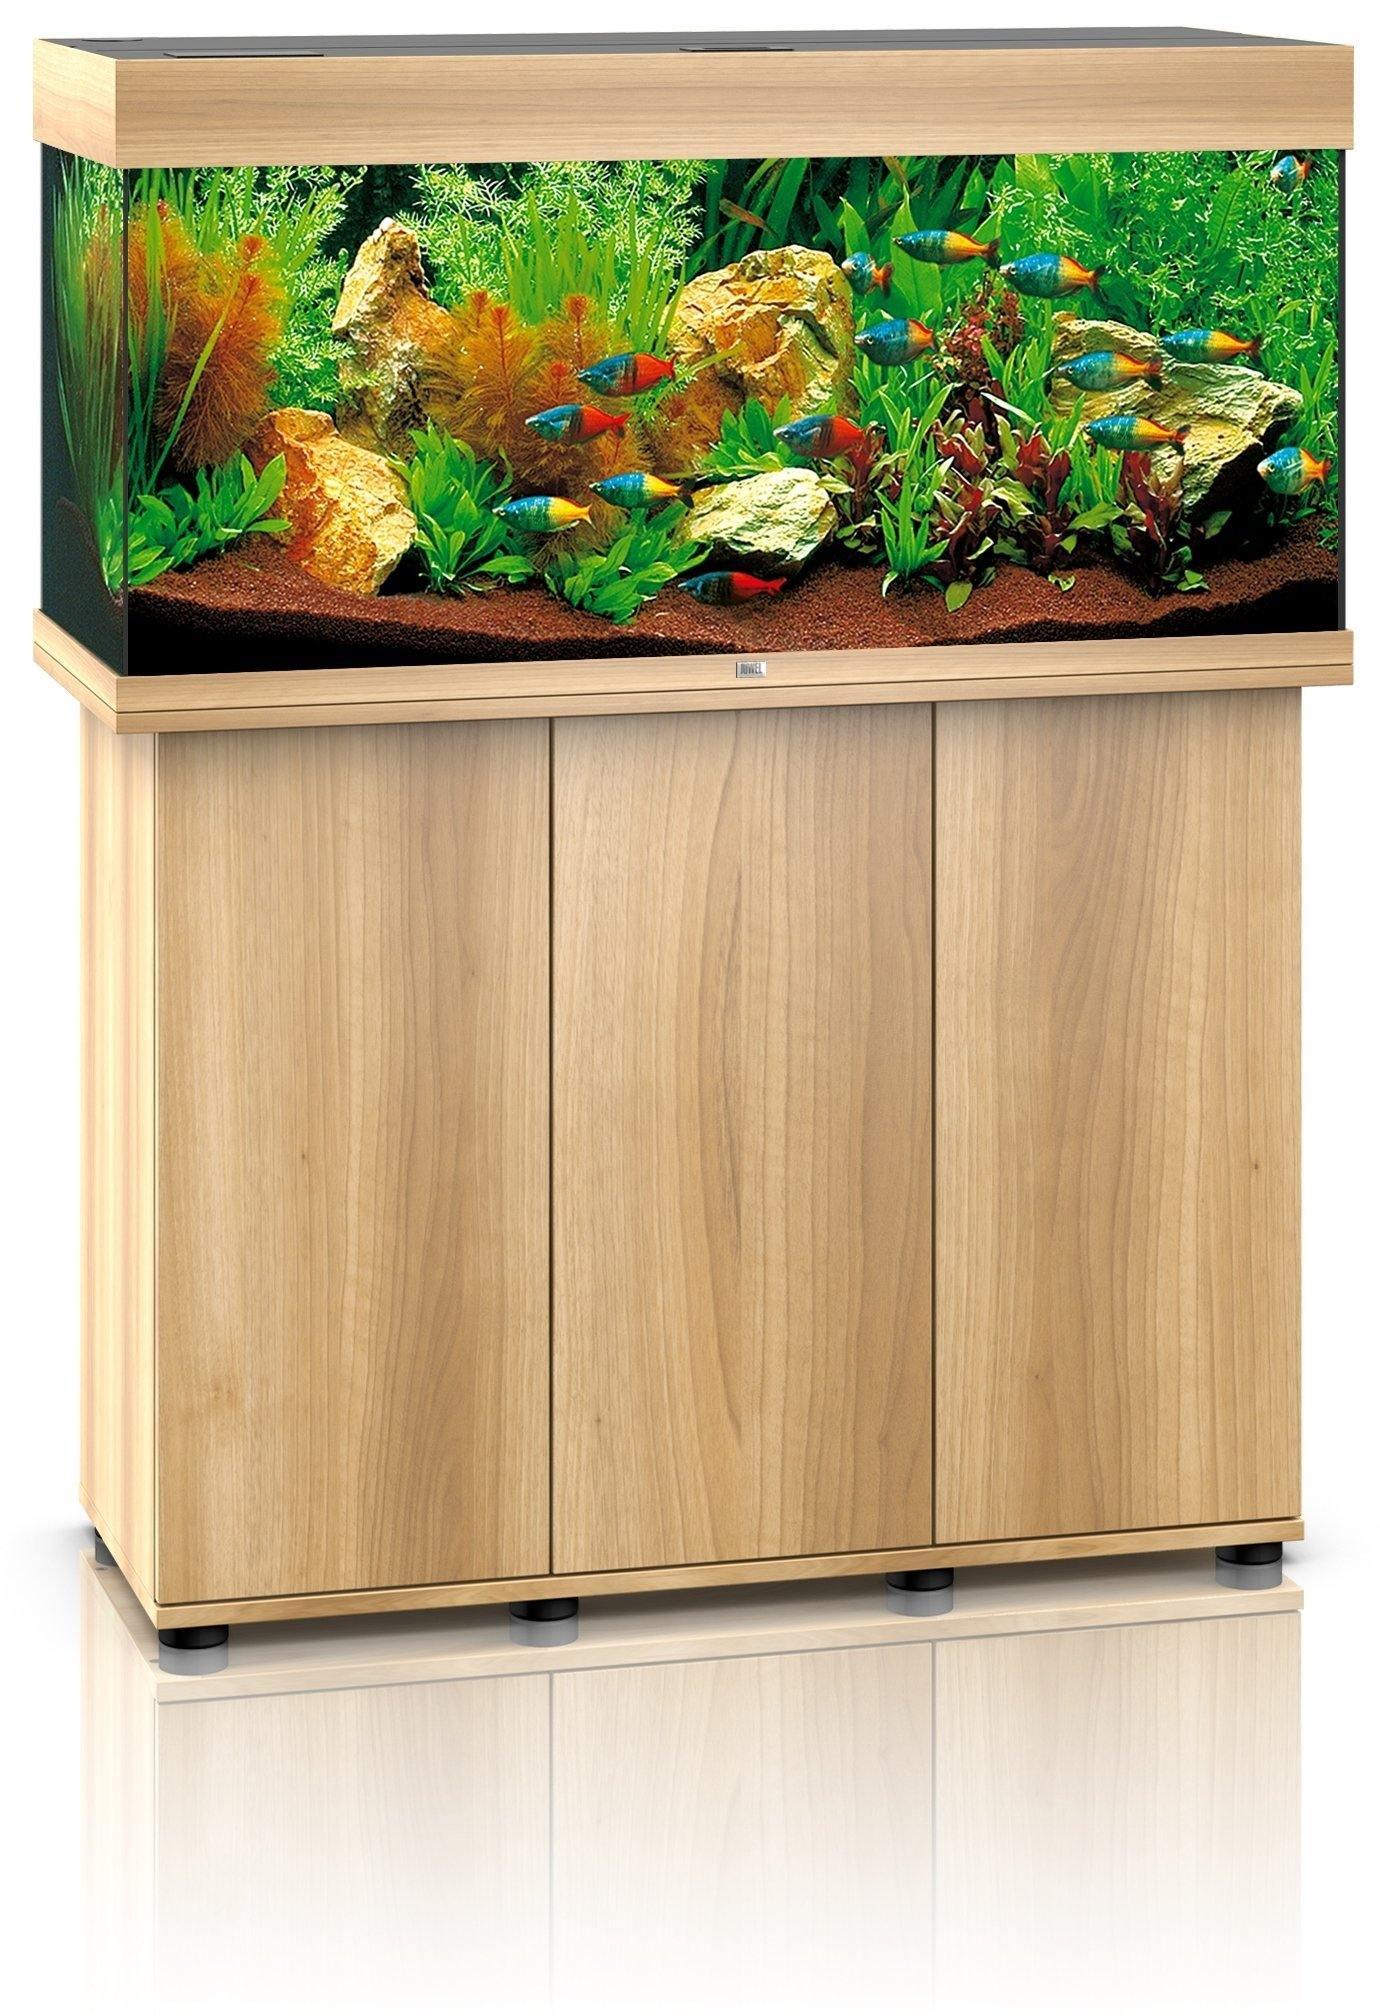 Juwel Rio 350 LED Aquarium and Cabinet - Amazing Amazon